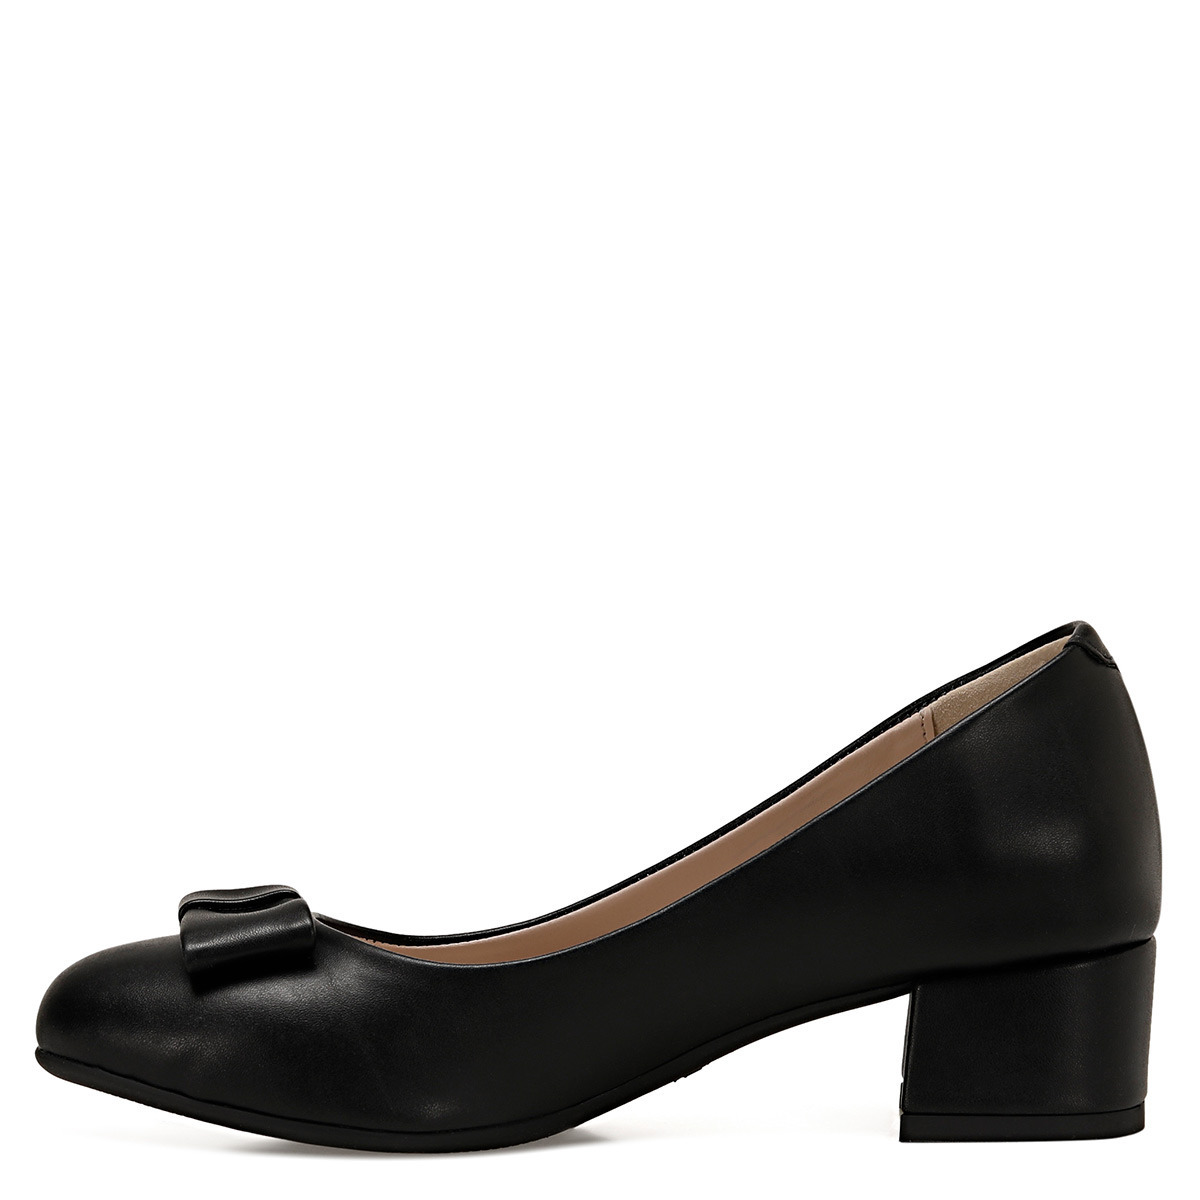 Flo LENIO Siyah Kadın Klasik Topuklu Ayakkabı. 6